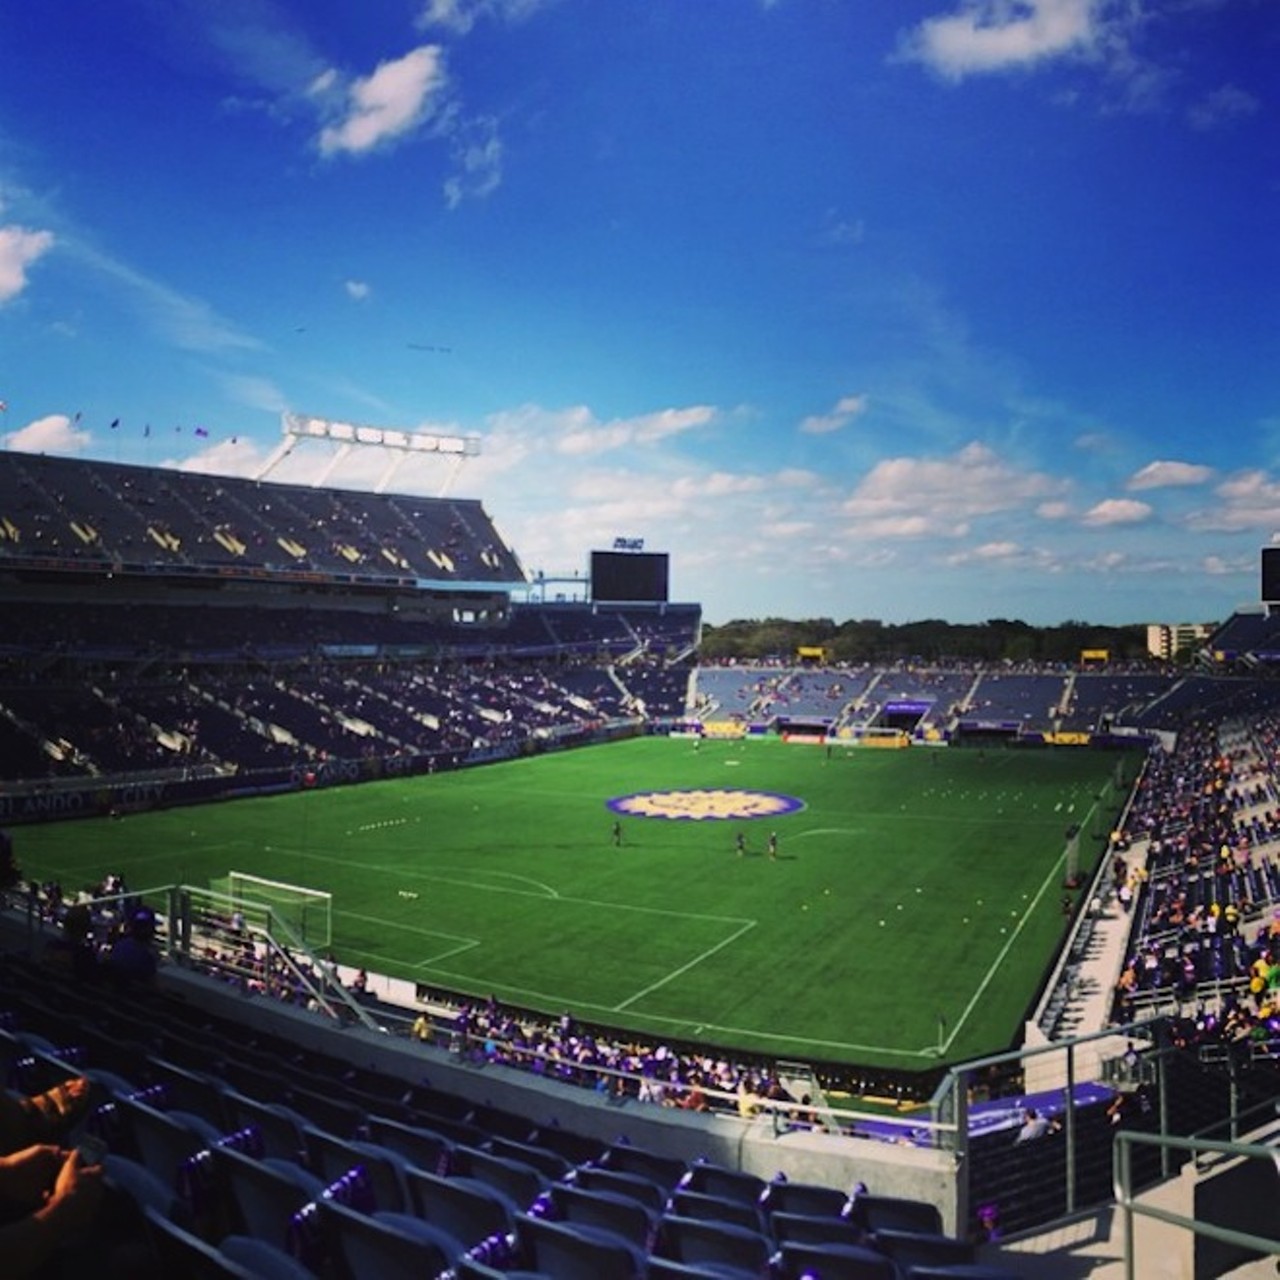 Orlando City Soccer via logbook88 on Instagram